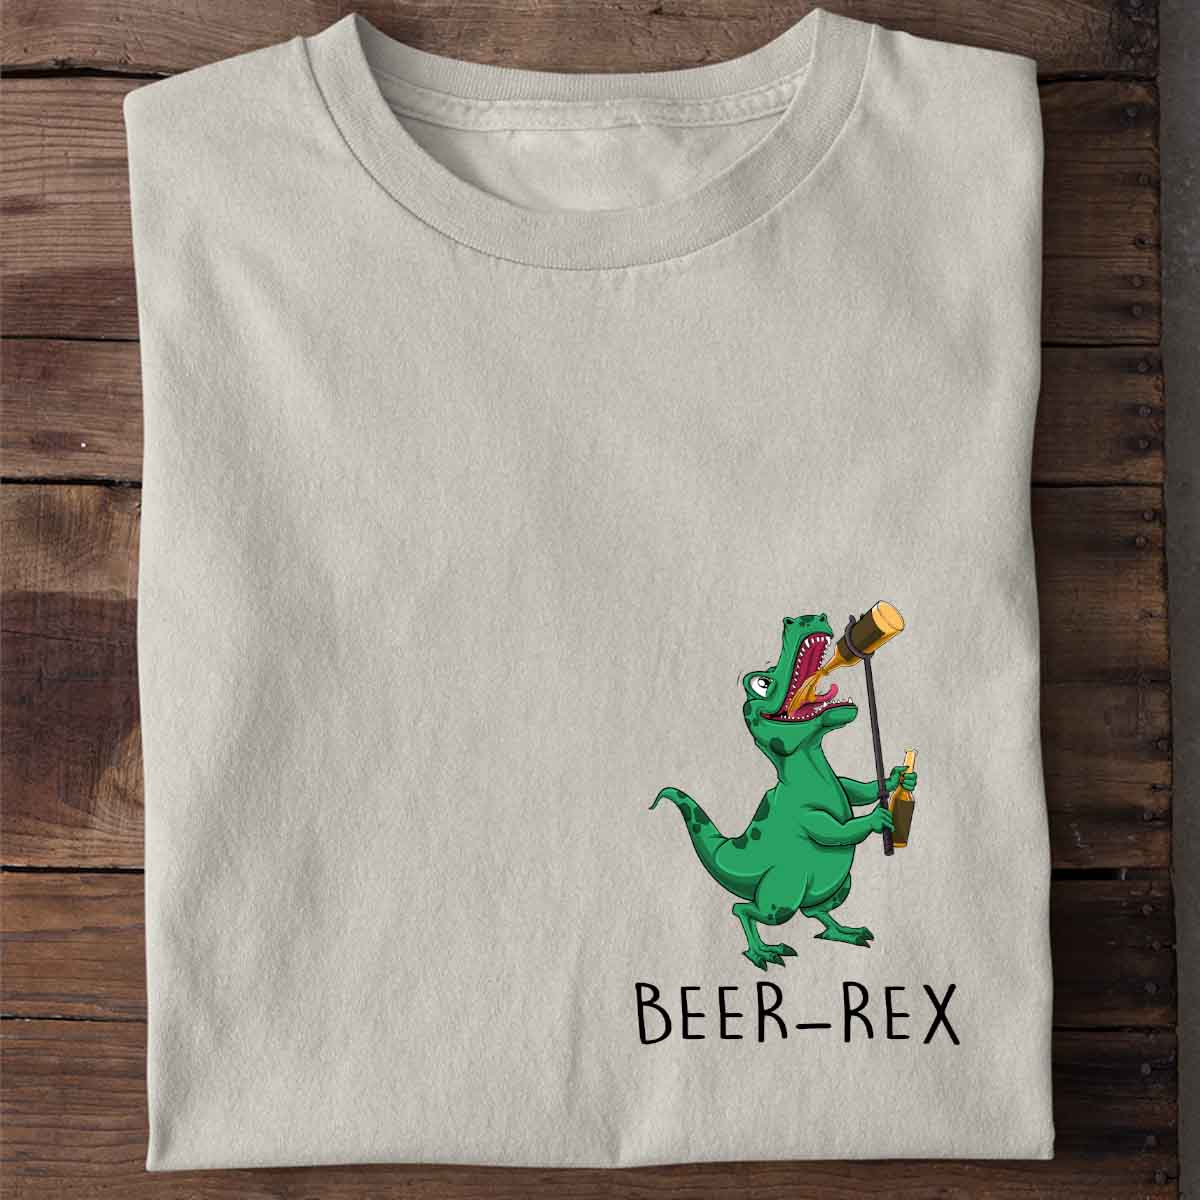 Beer-Rex T-Rex - Shirt Unisex Chest